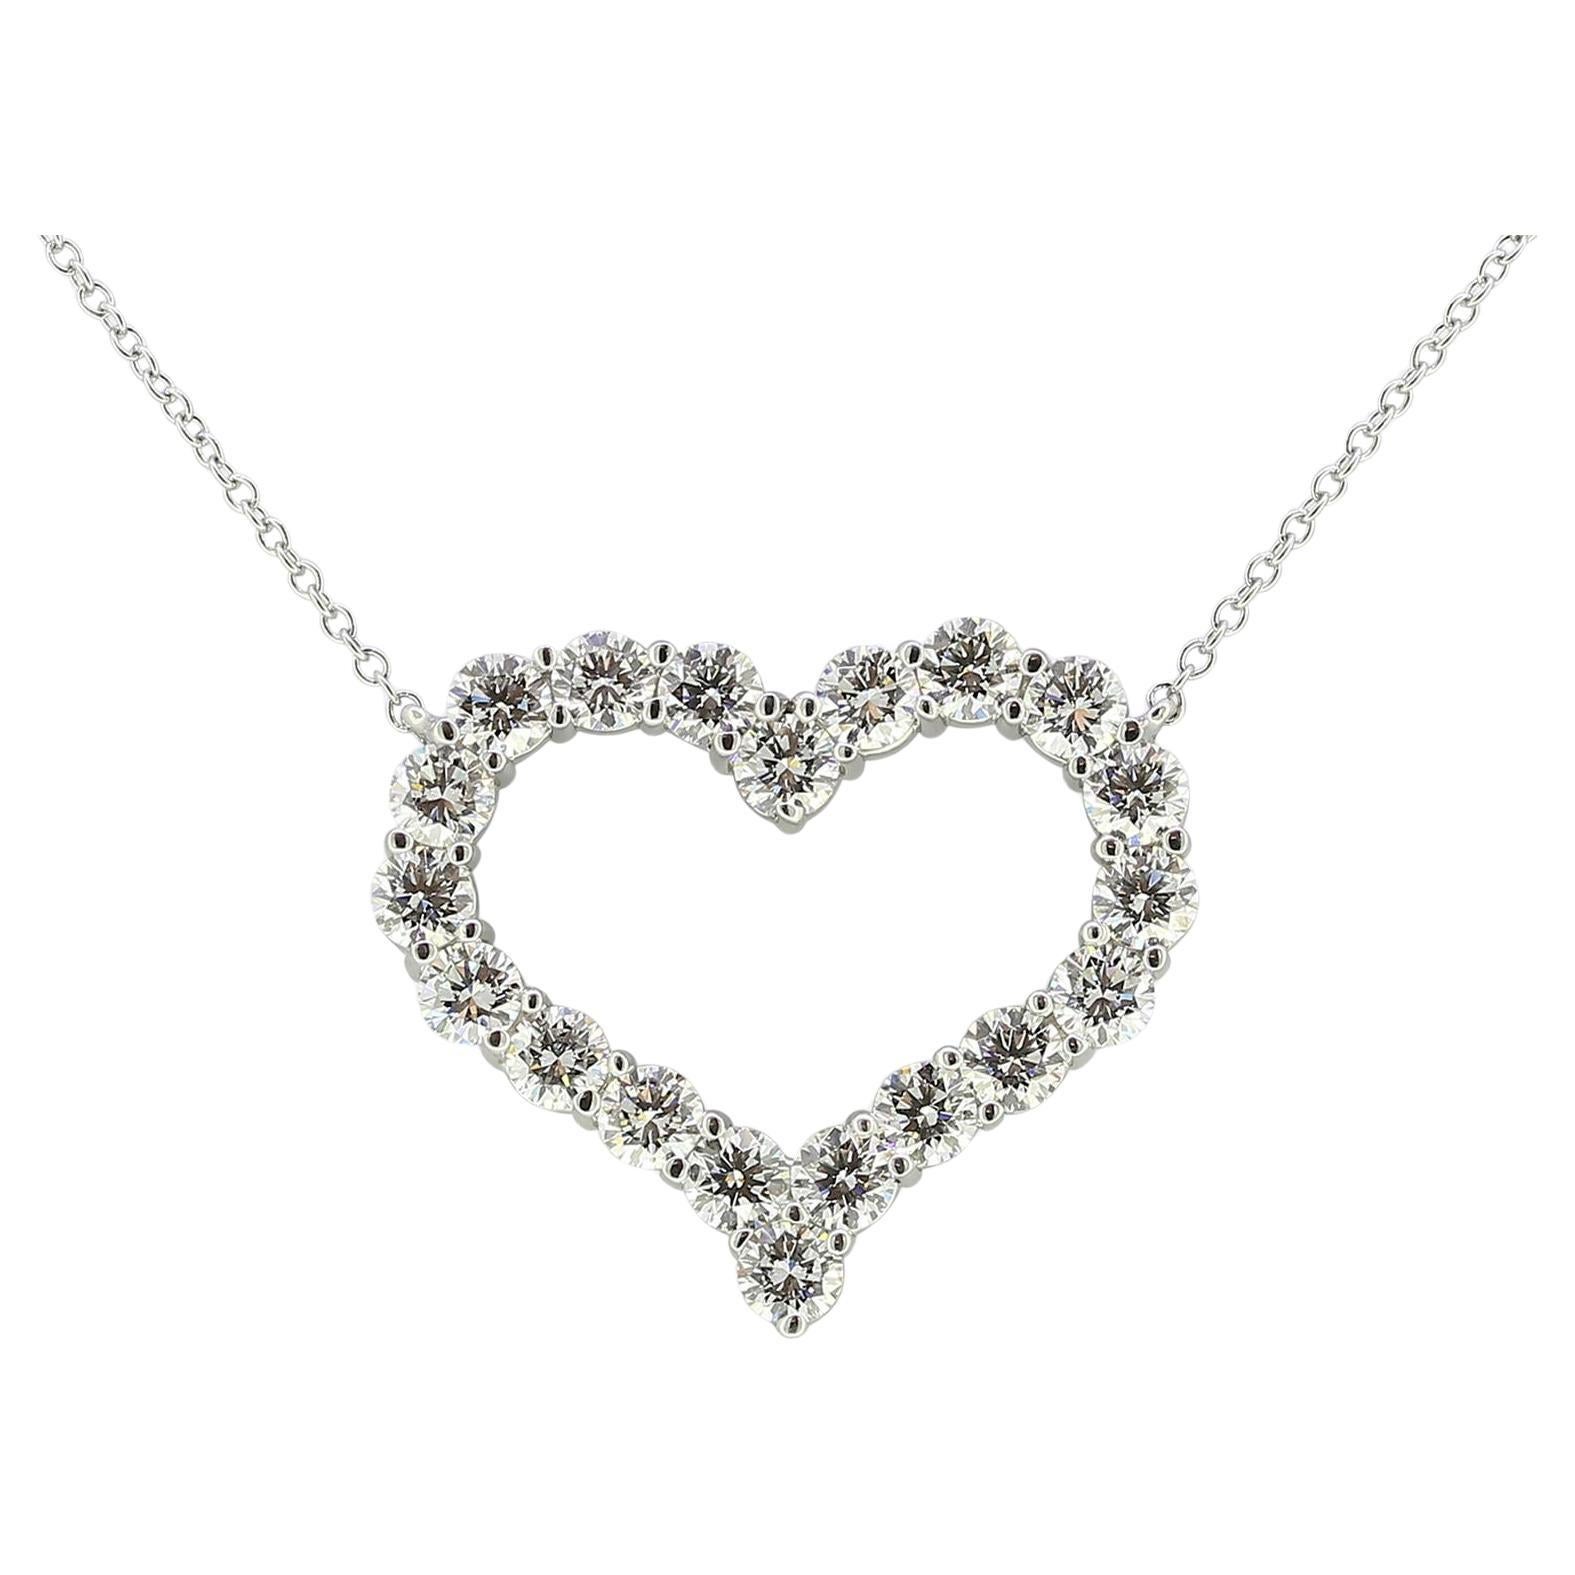 Tiffany & Co. Tiffany Hearts 2.00 Carat Diamond Necklace